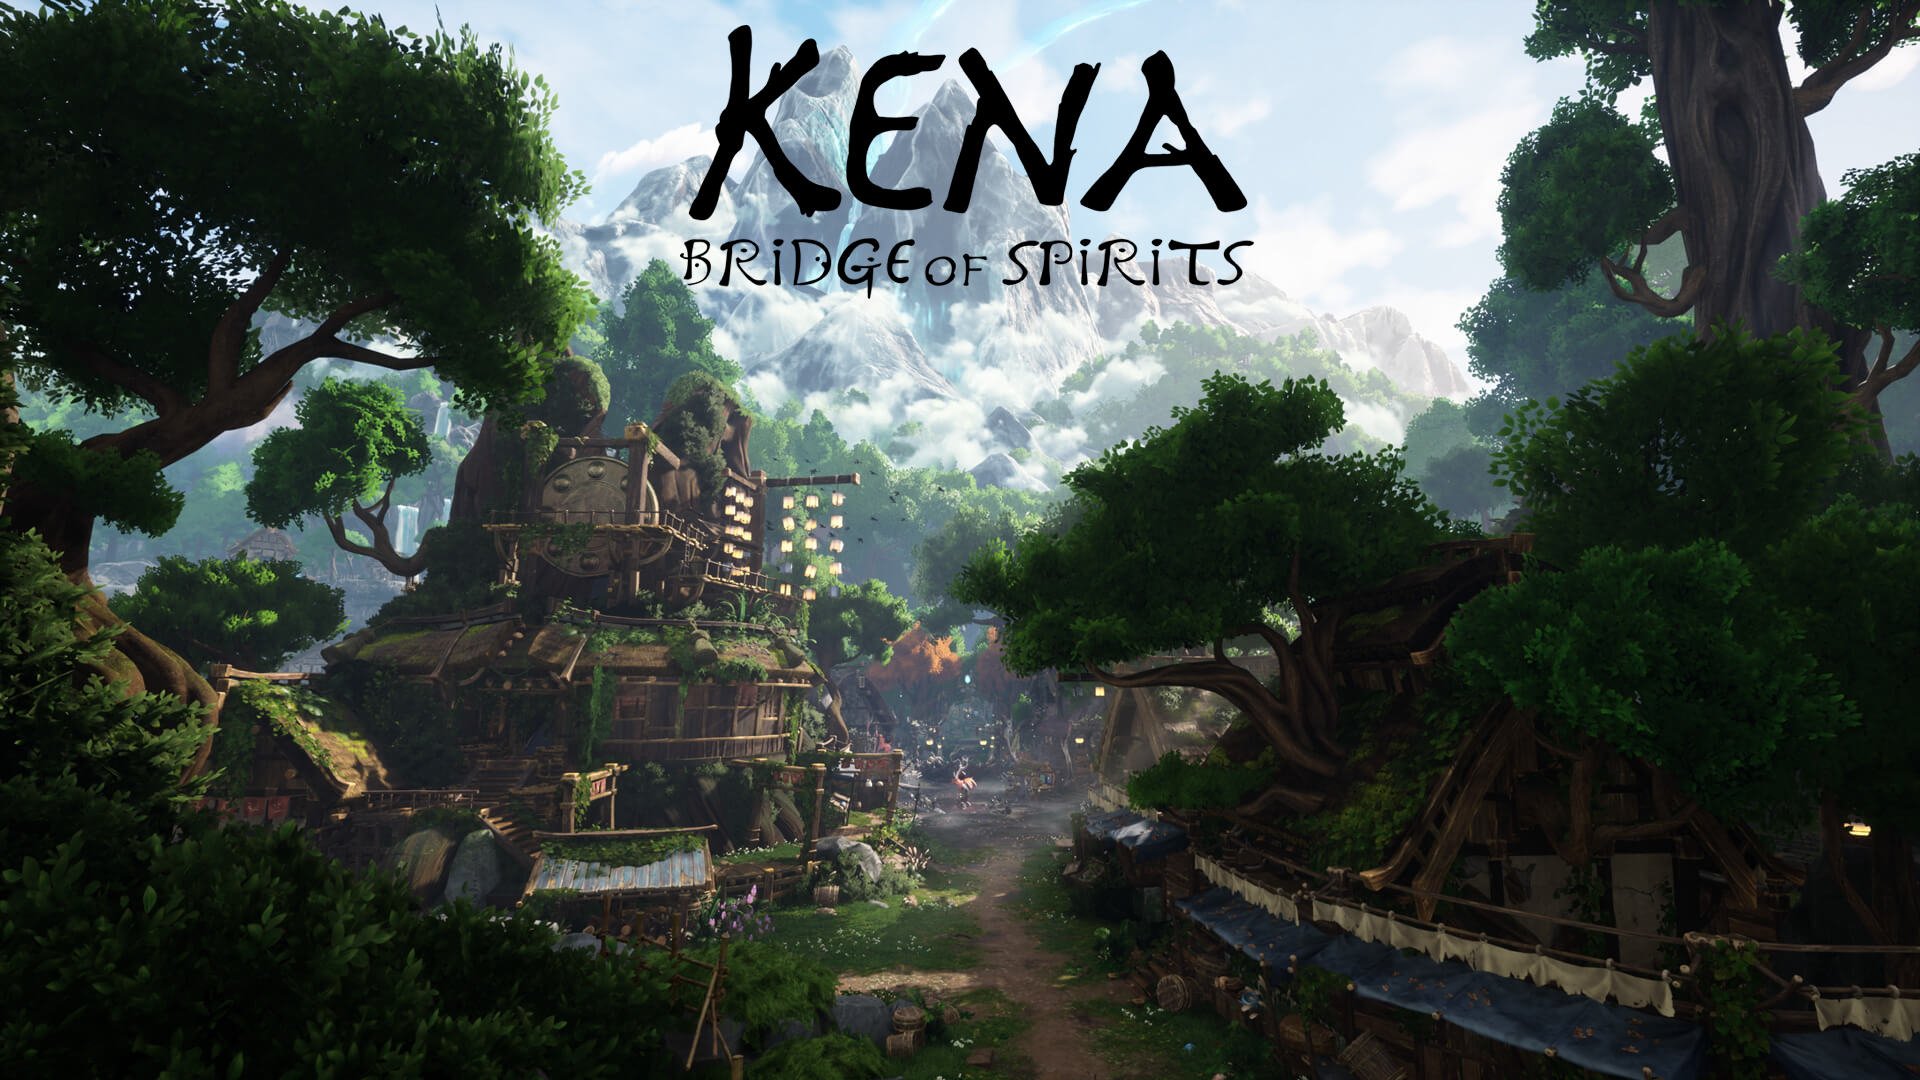 download free games like kena bridge of spirits